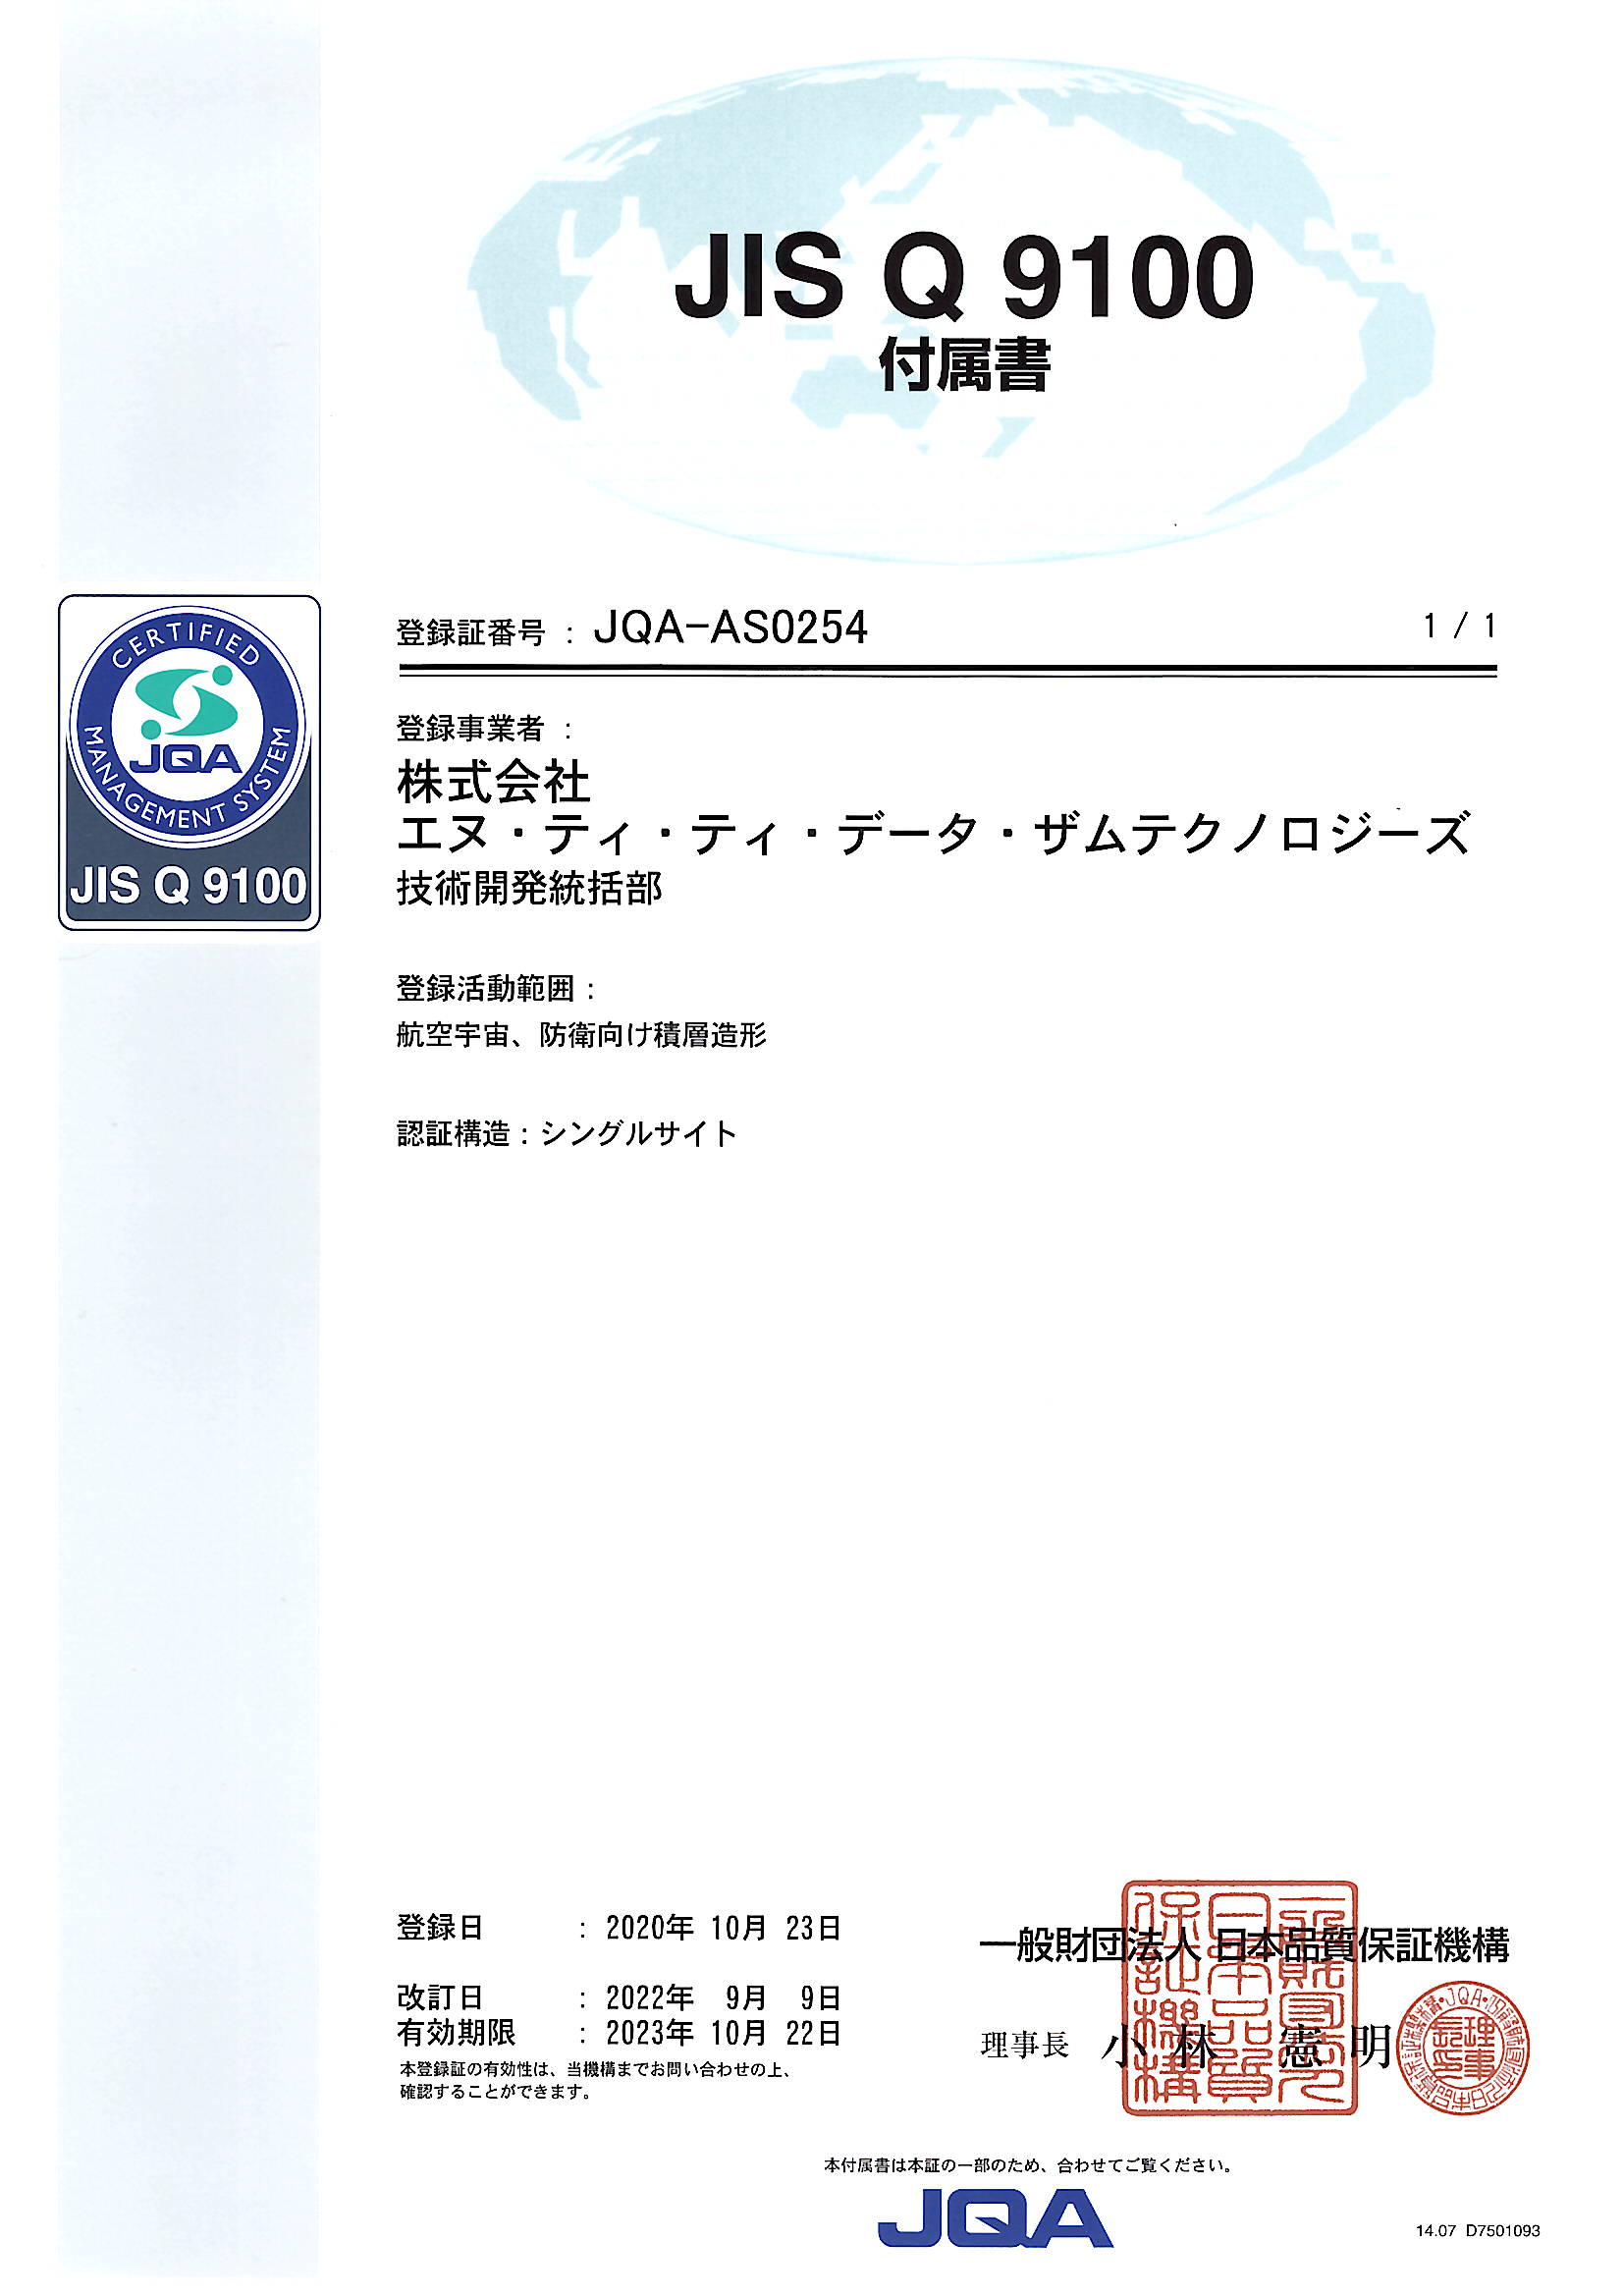 JISQ9100認定証_JN_ページ